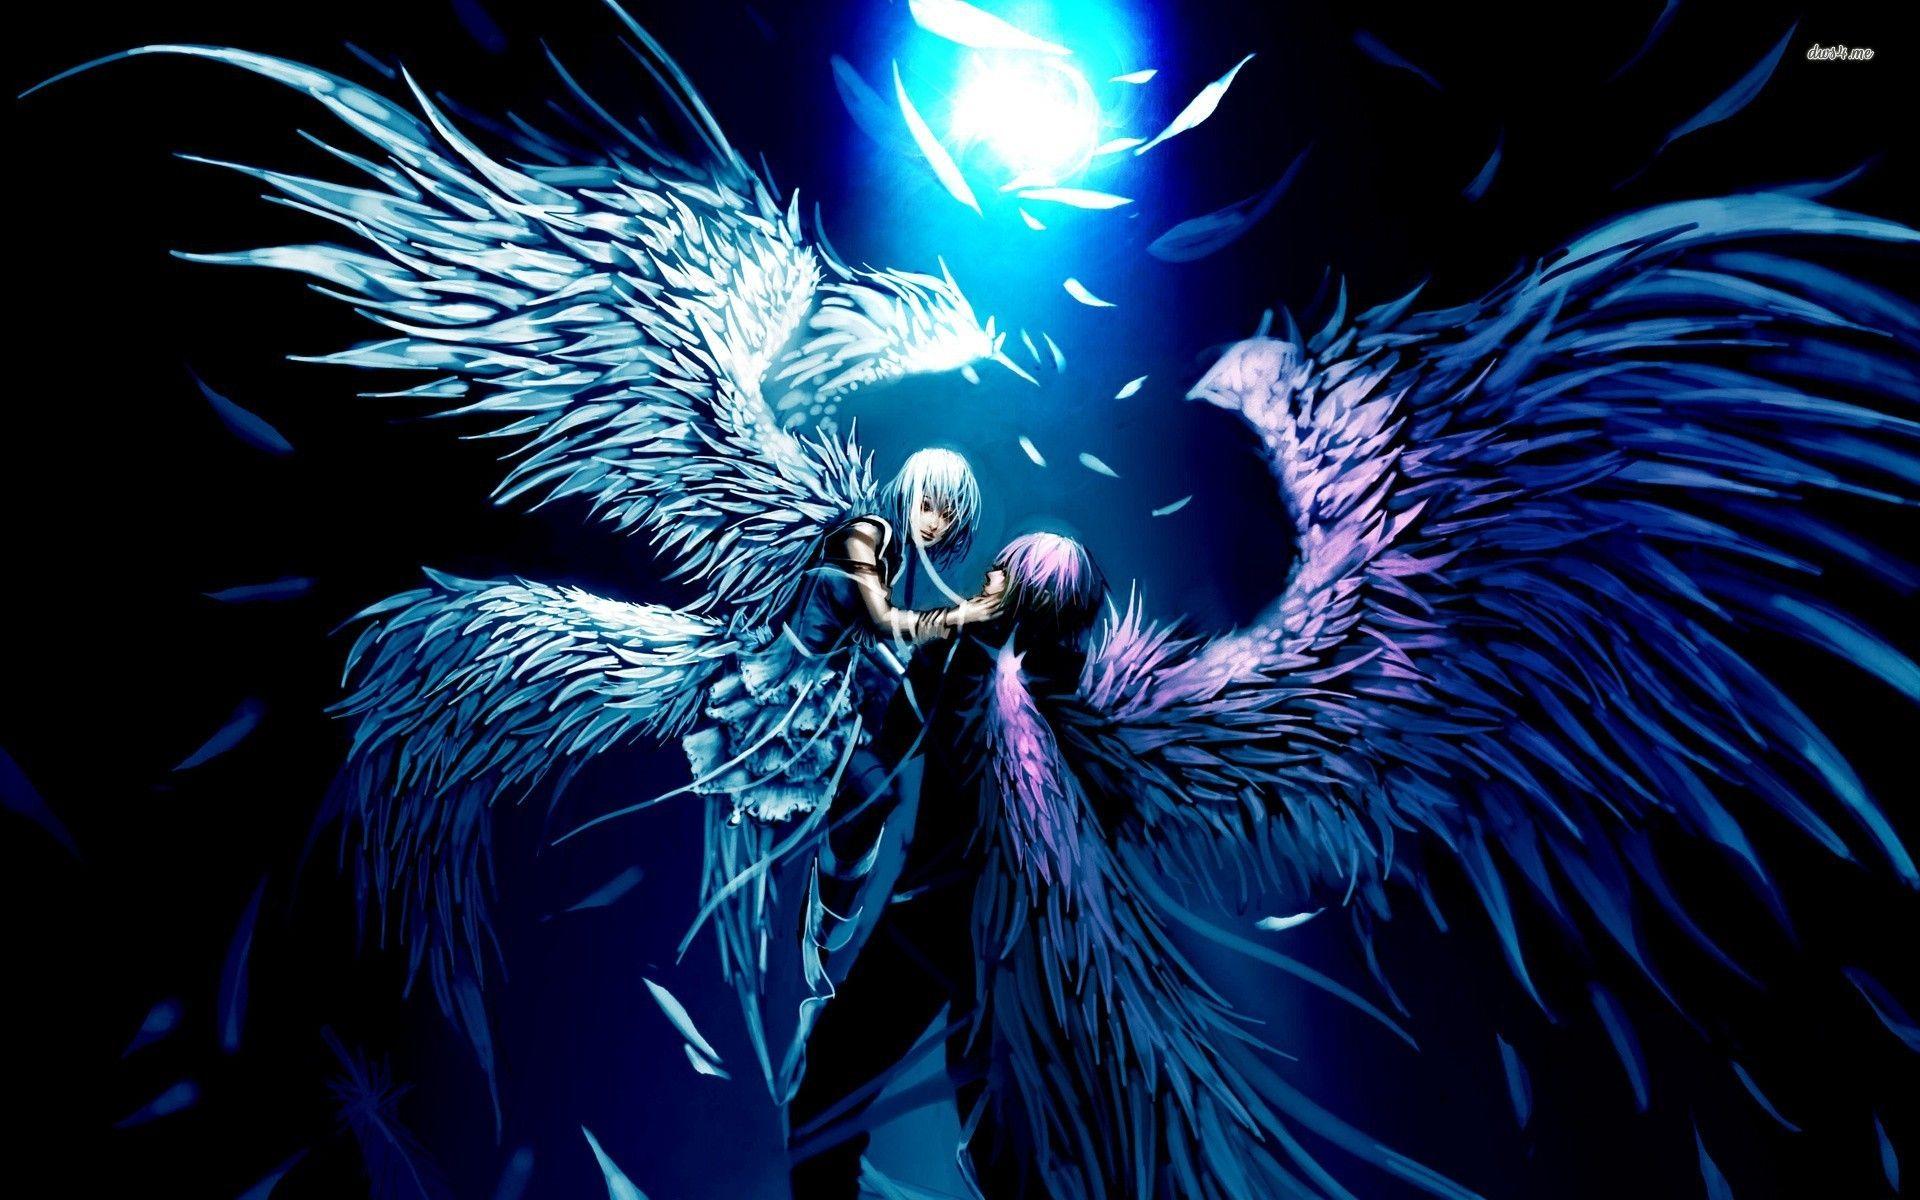 Angel and Demon Lovers Anime Desktop background. TAC IMAGE